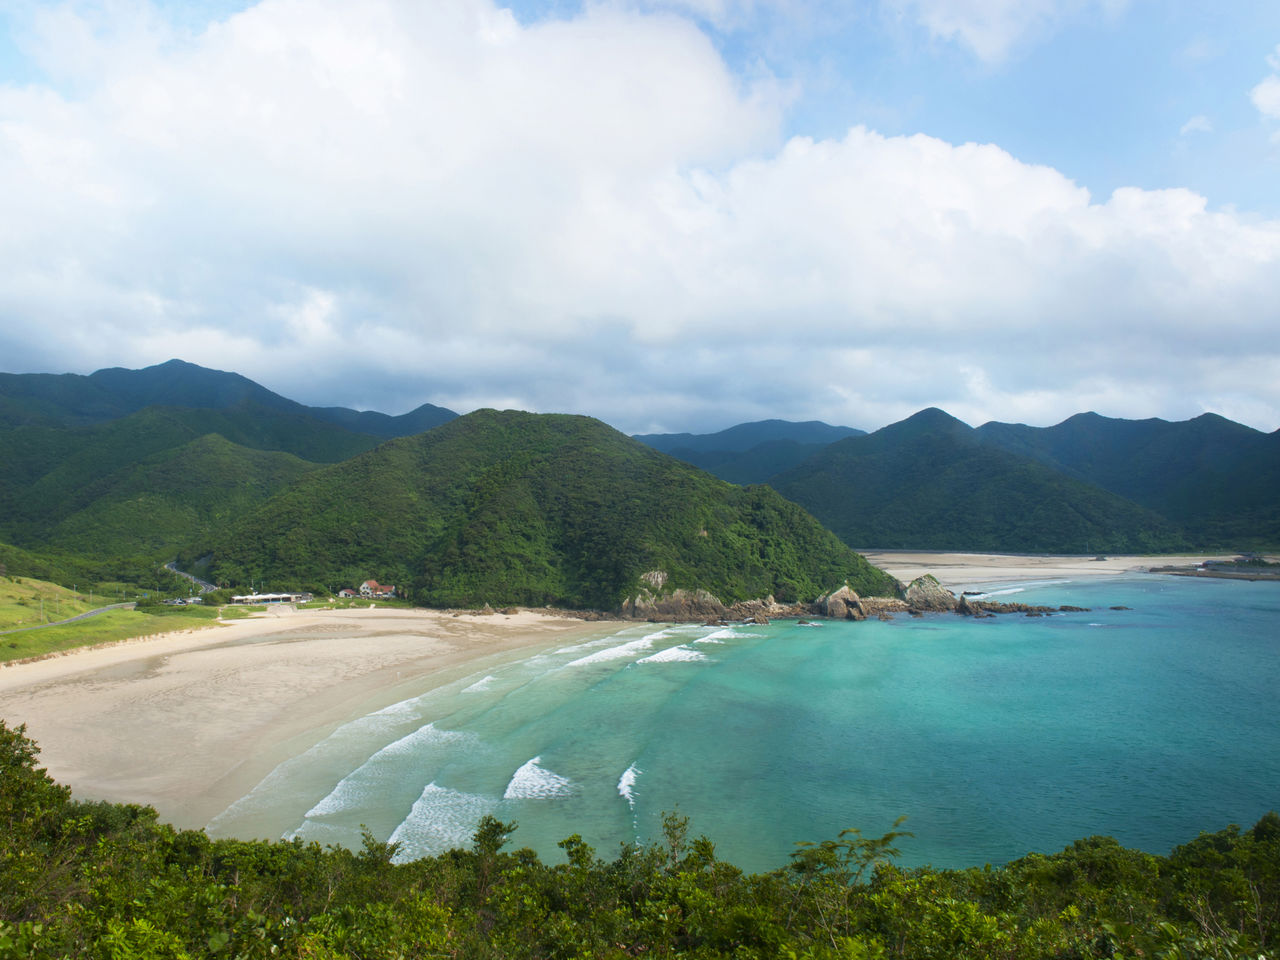 اختيرت مياه شاطئ تاكاهاما الجميلة المحاطة بالجبال الخضراء من بين الأفضل في اليابان.